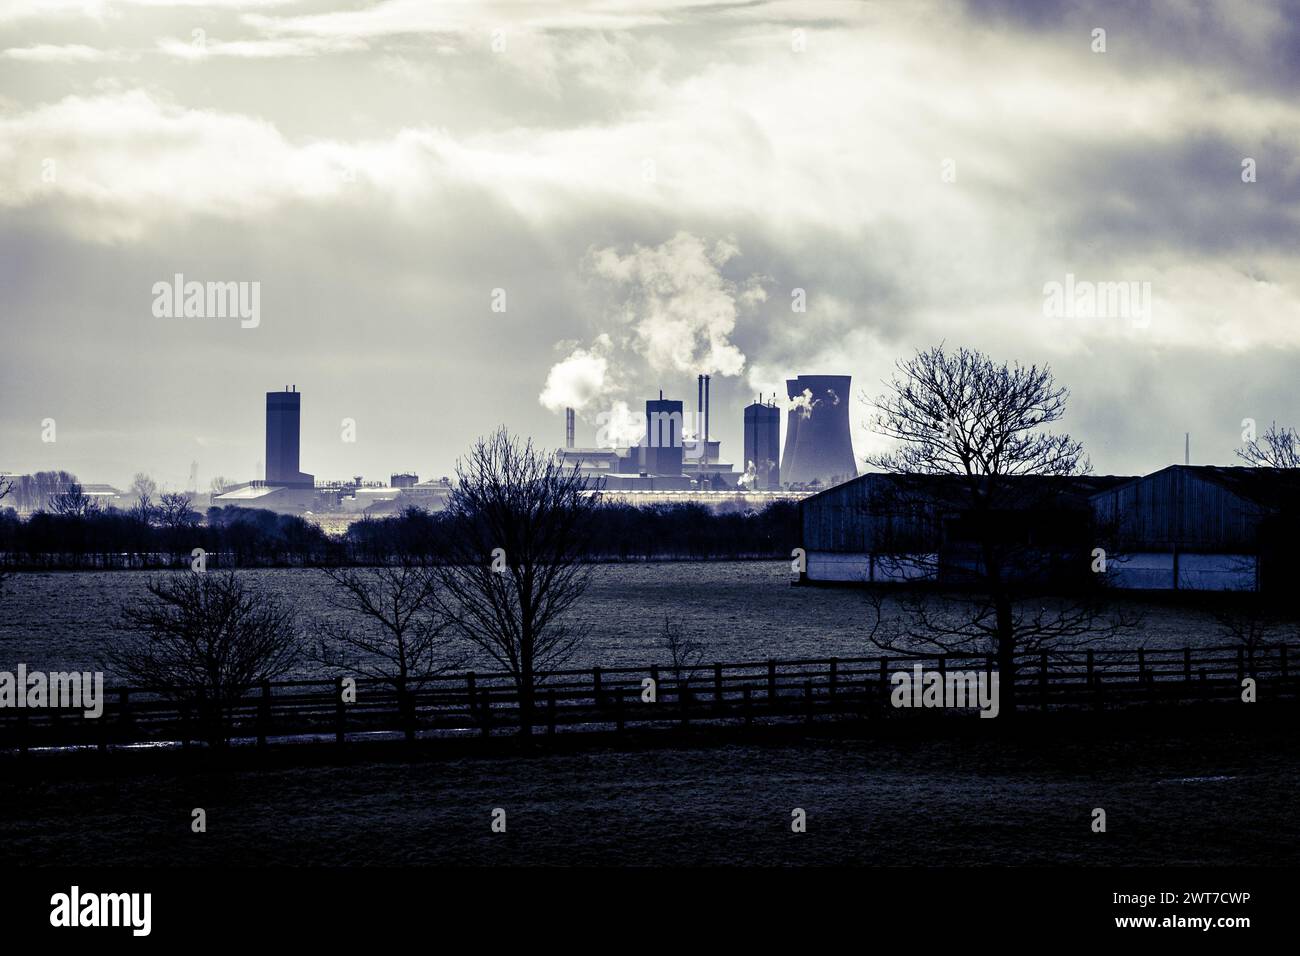 Paysage industriel, vue vers Middlesbrough. Les centrales électriques, les cheminées et les tours de refroidissement peuvent être vues dans la distance au-dessus des champs. Banque D'Images